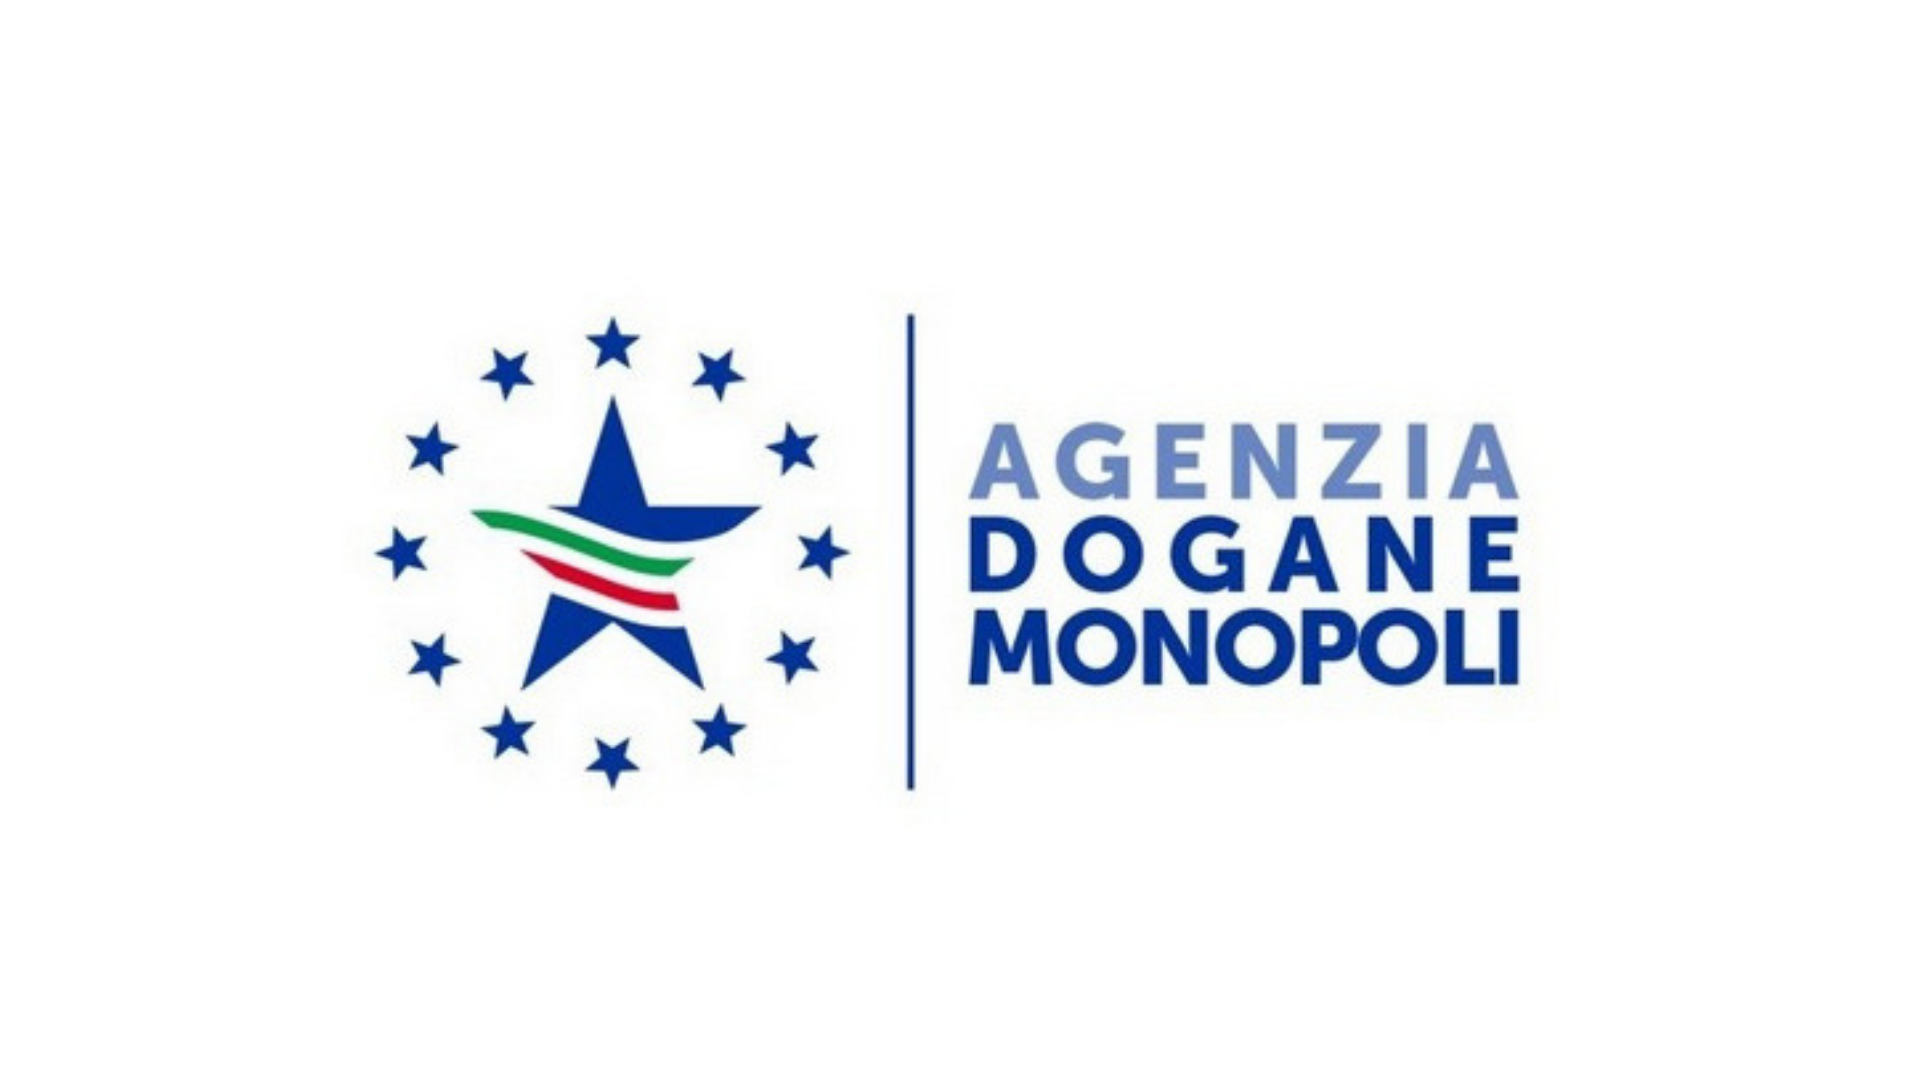 Agenzia Dogane e Monopoli v8